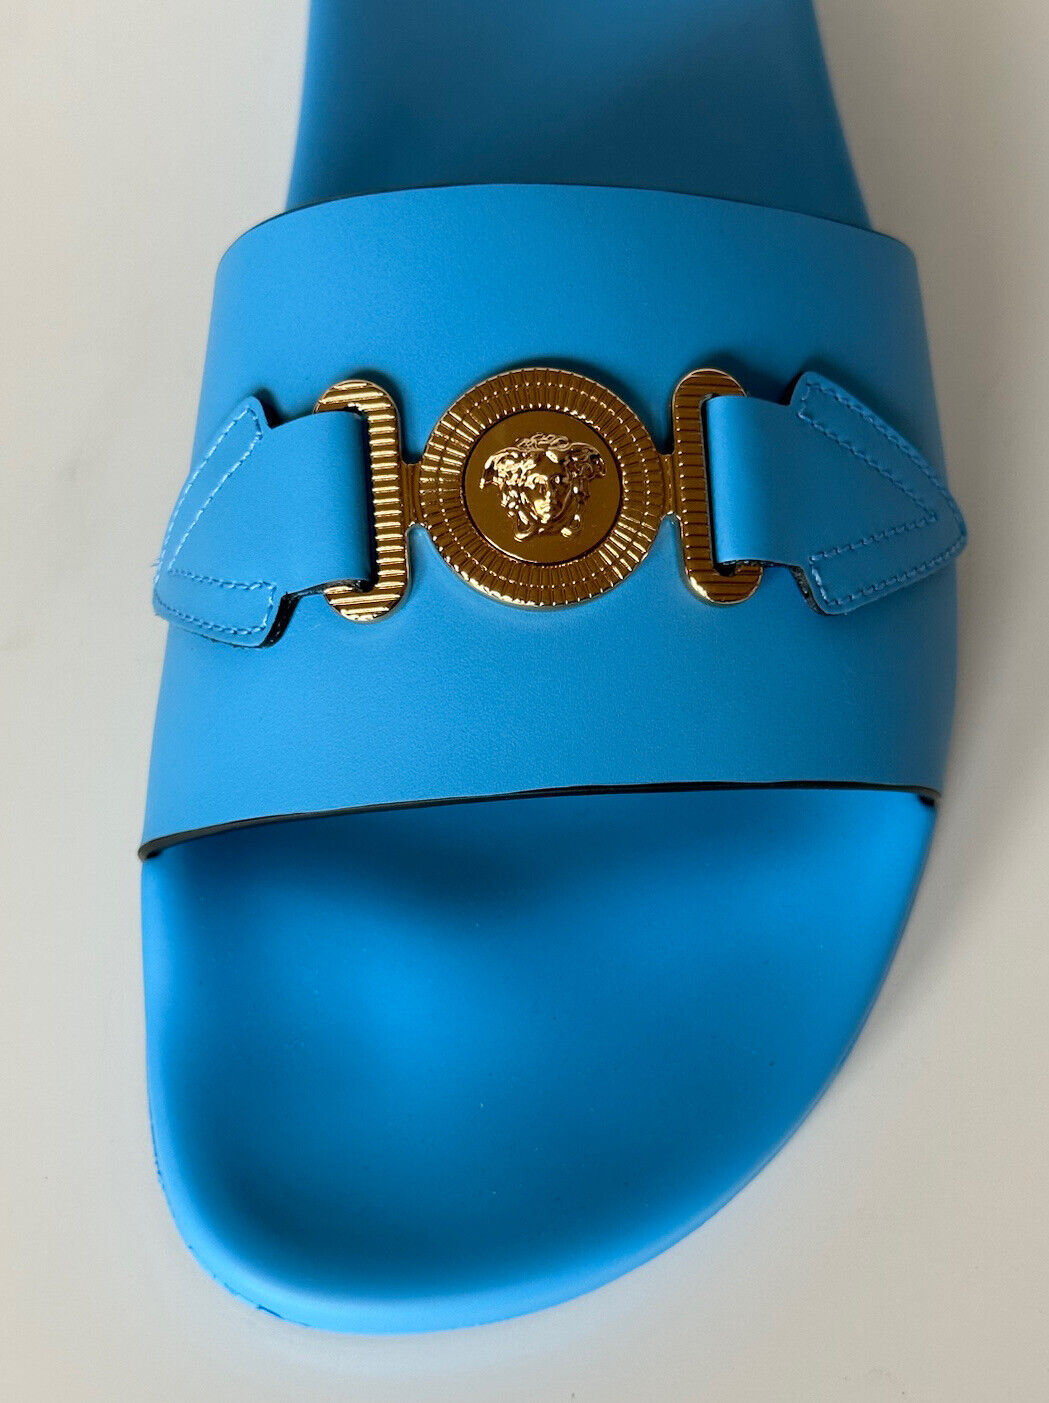 NIB 575 долларов США Versace Gold Medusa Кожаные/резиновые сандалии Синие 10,5 (43,5) 1004983 IT